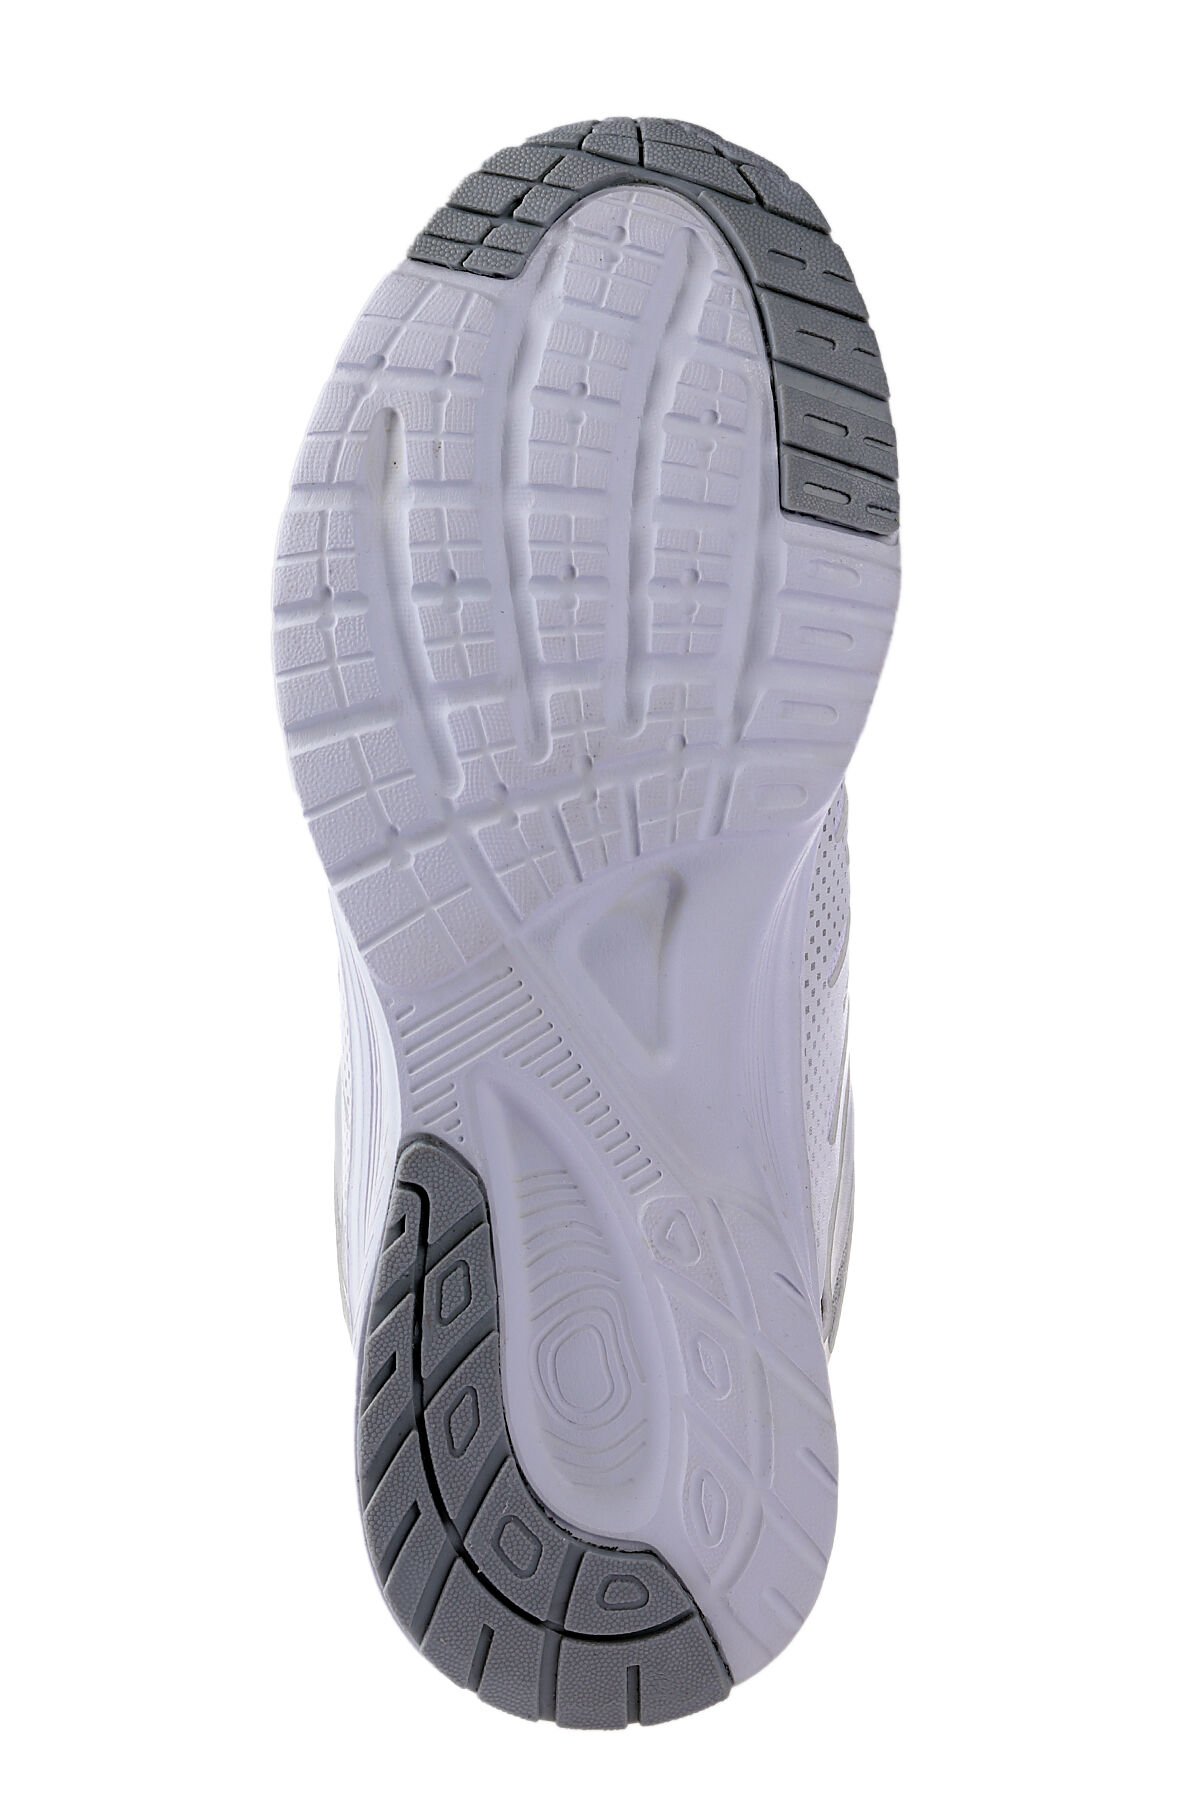 FONDA Sneaker Kadın Ayakkabı Beyaz - Thumbnail